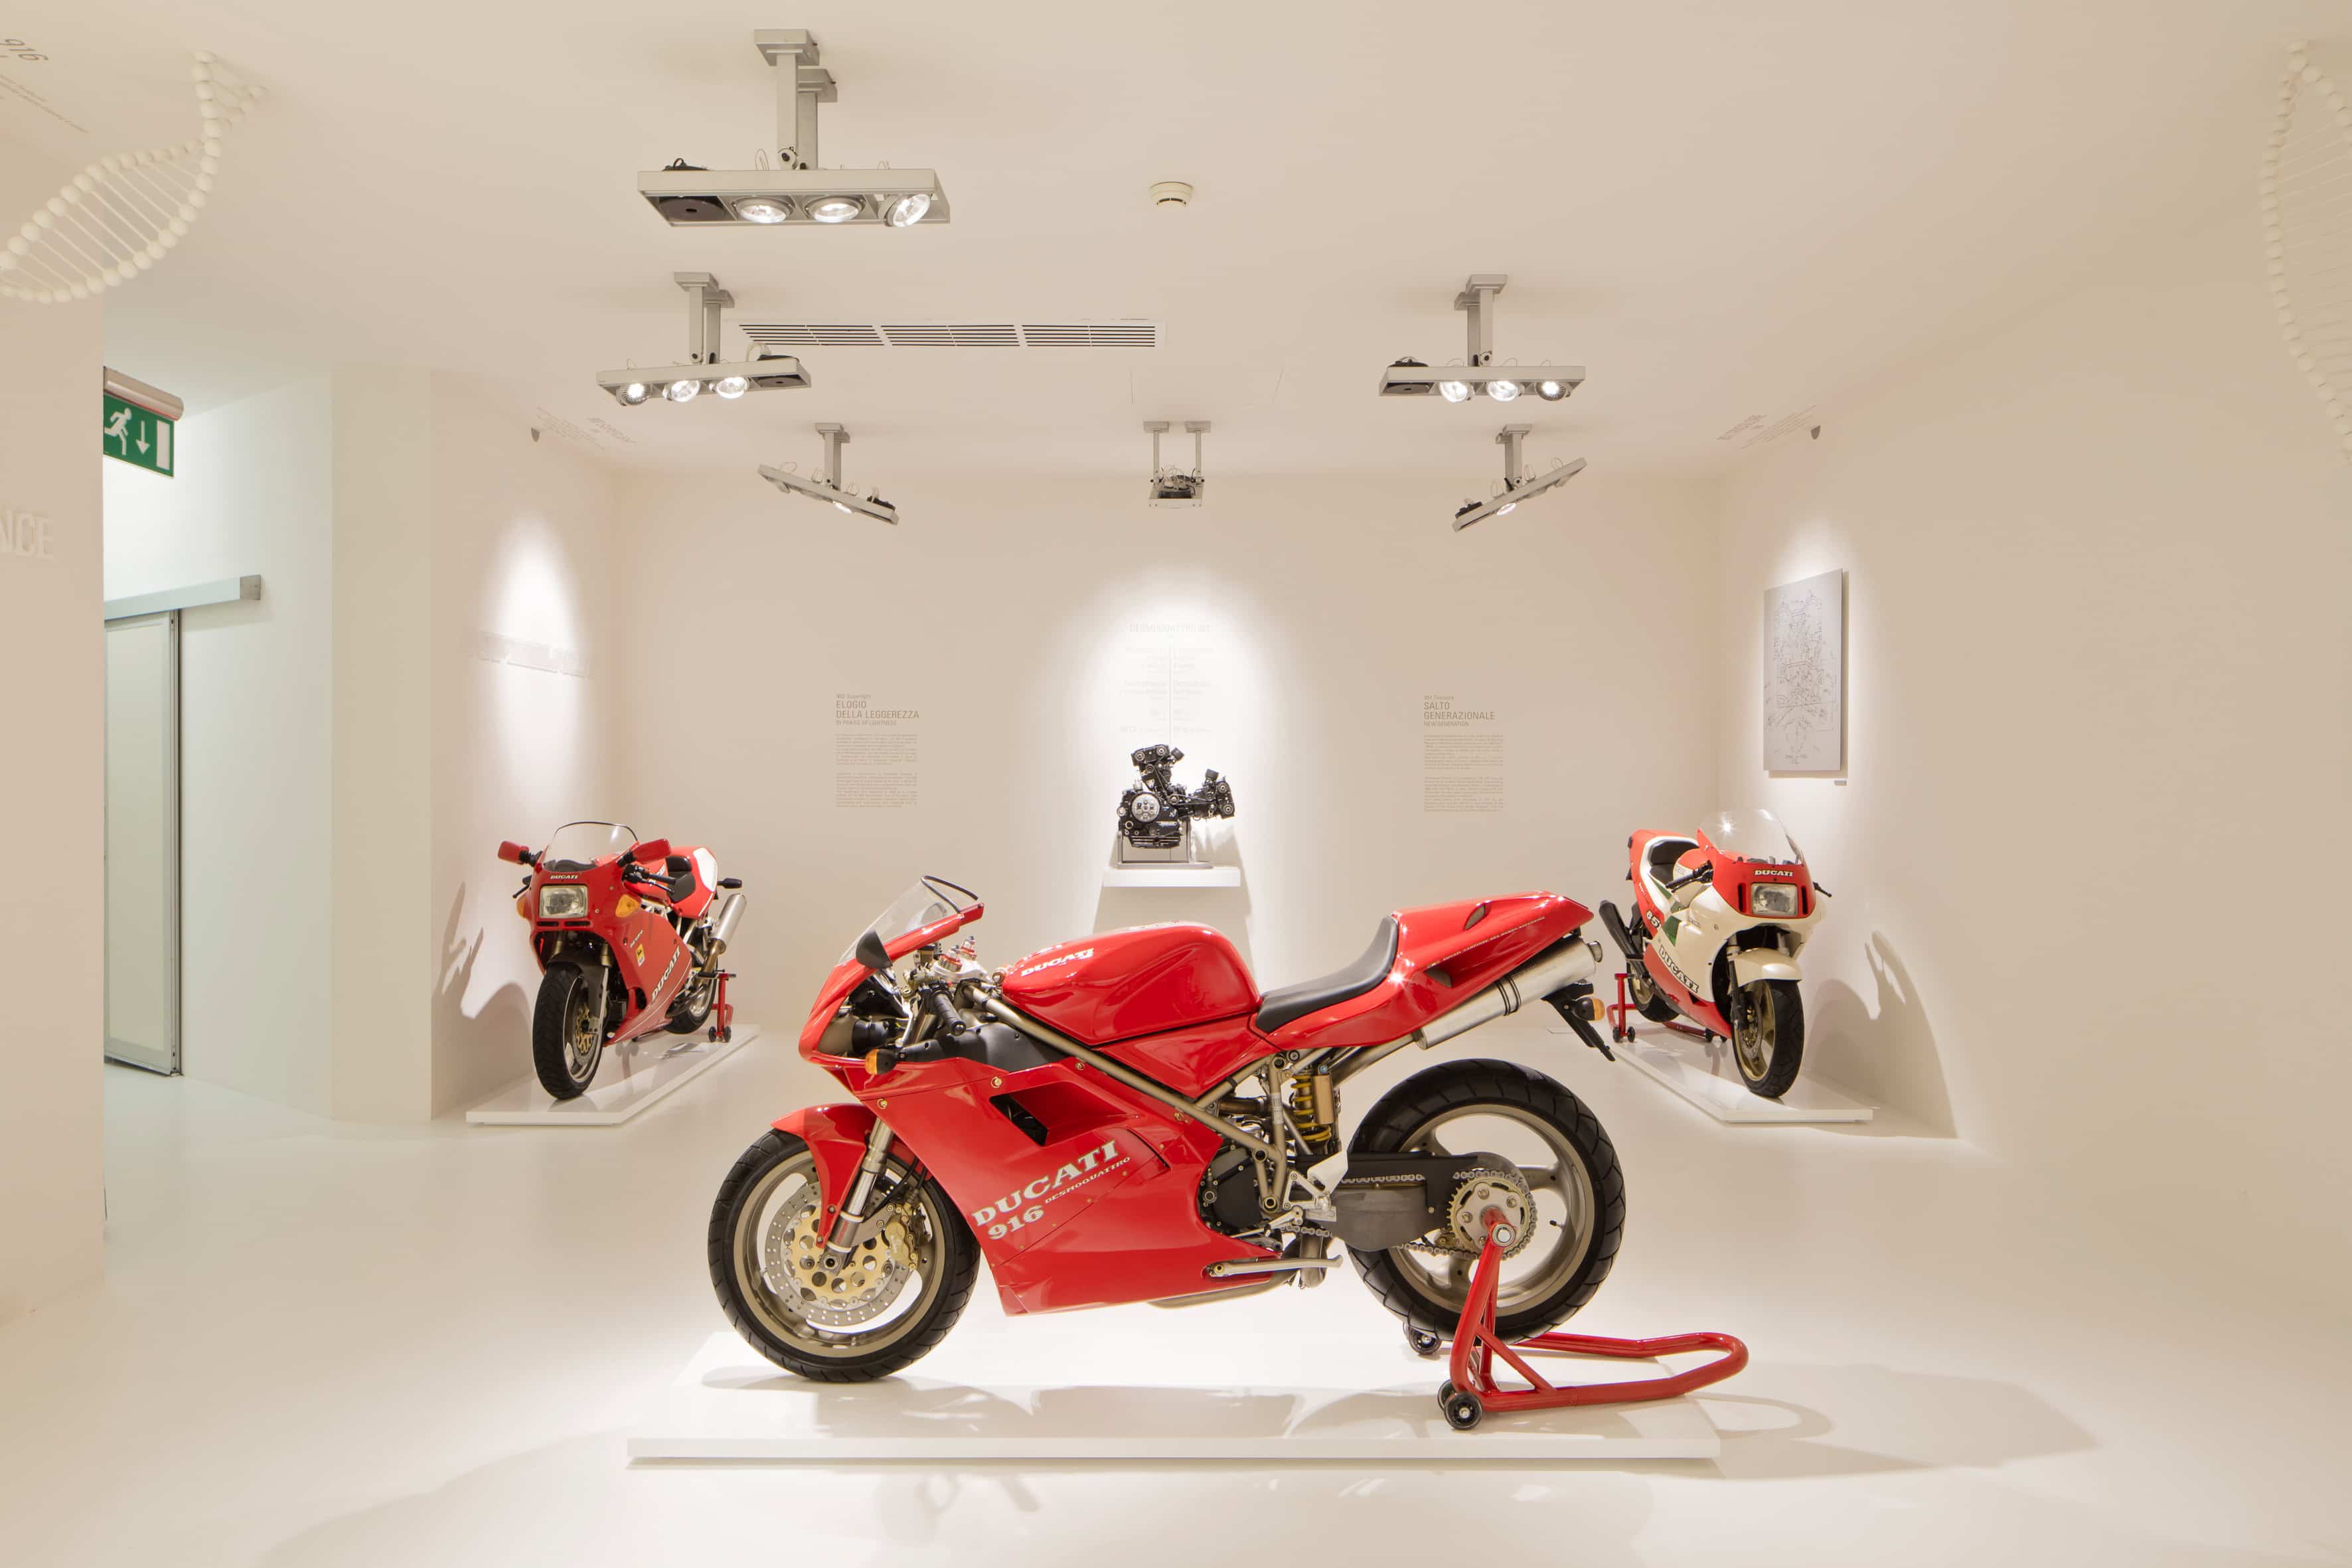 Ducatiミュージアムは7月4日土曜日から営業を再開